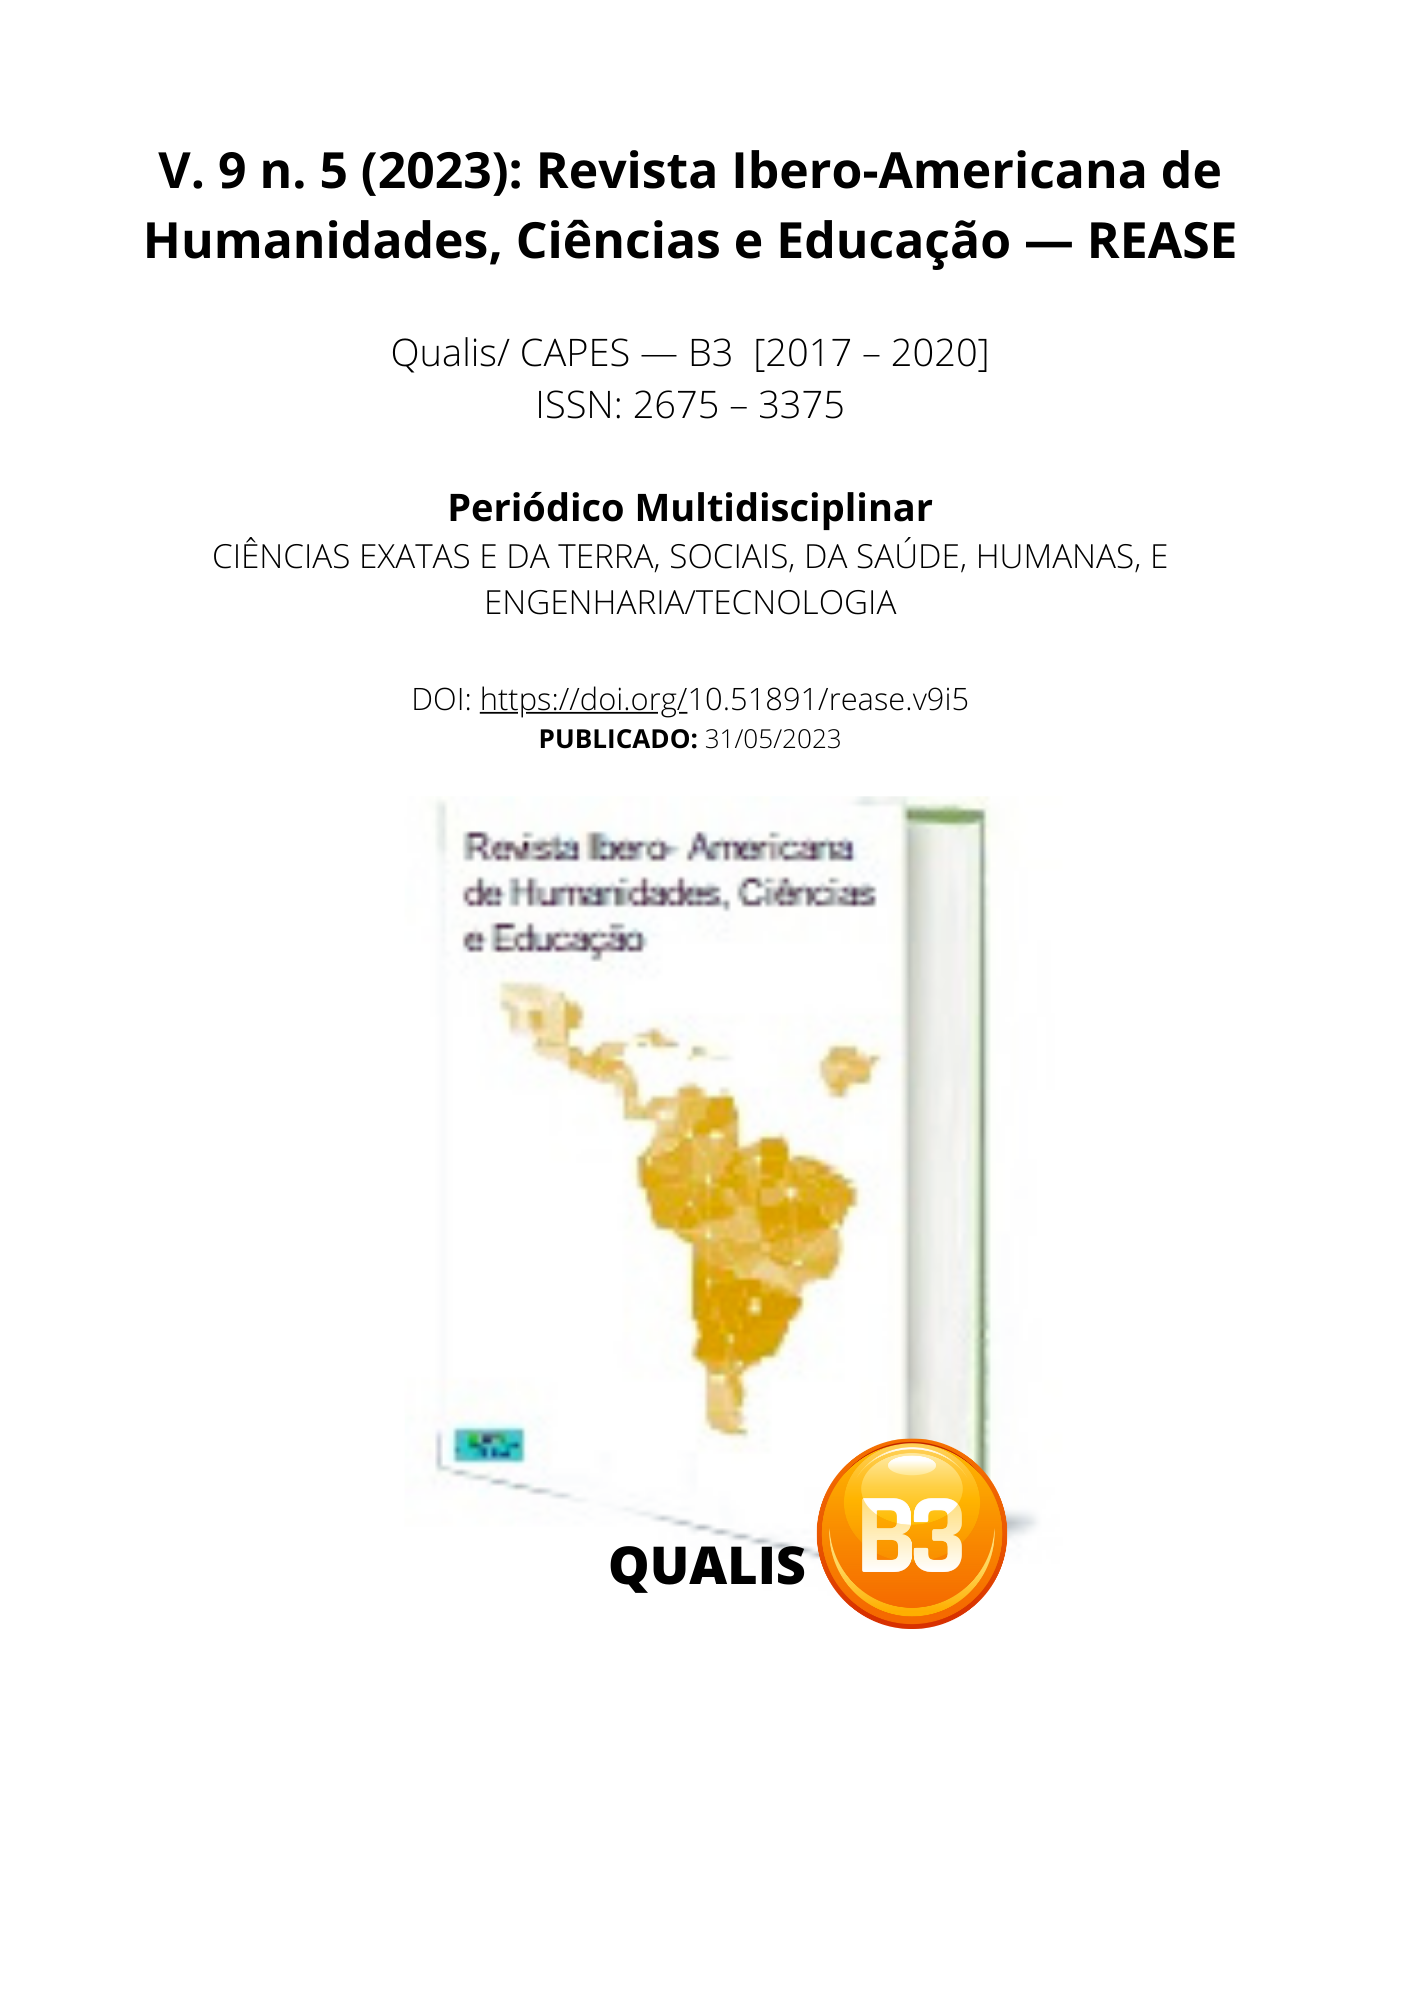 v. 9 n. 5 (2023): Revista Ibero-Americana de Humanidades, Ciências e  Educação- REASE